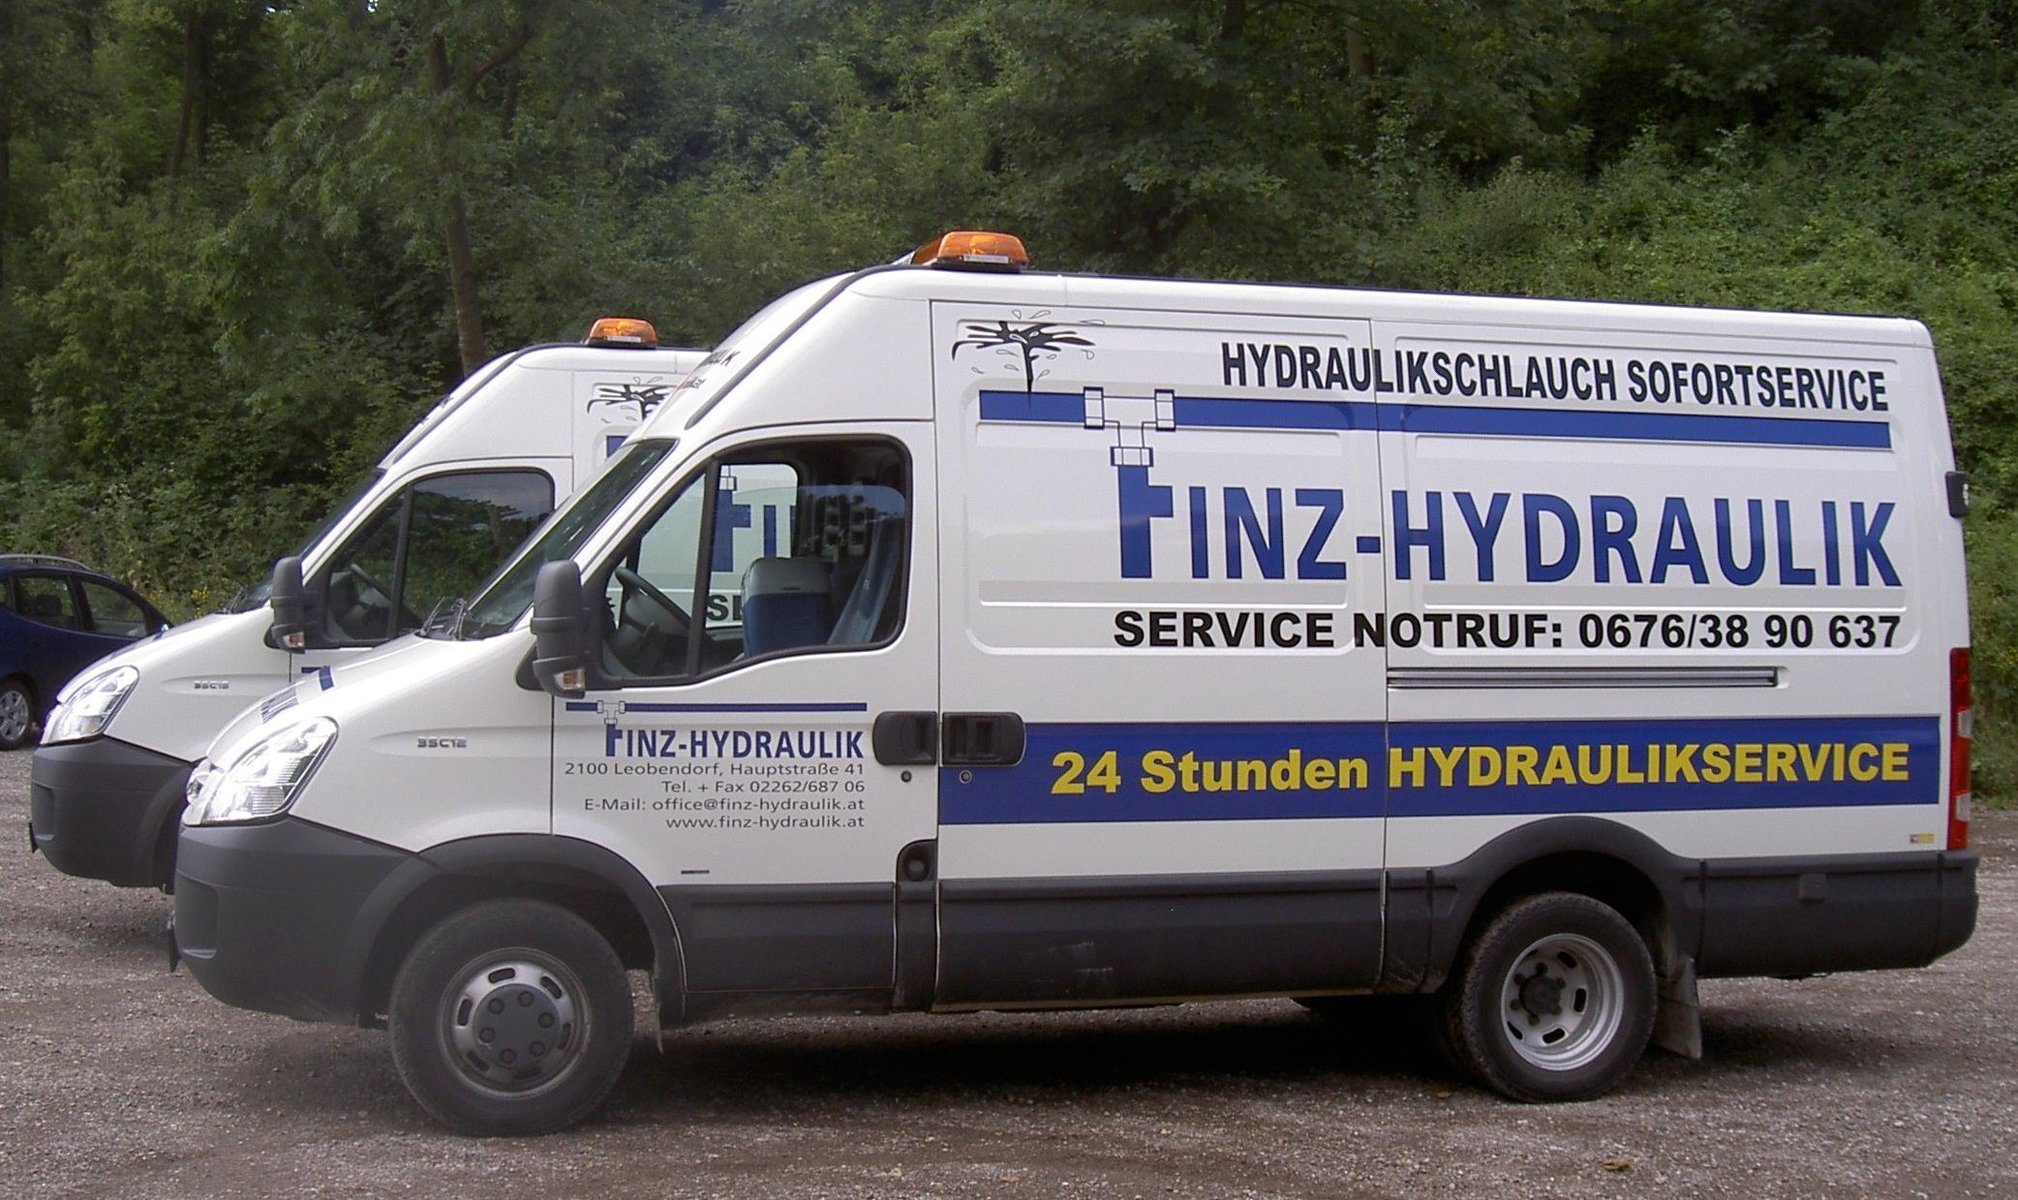 Fahrzeug der Finz Hydraulik GmbH